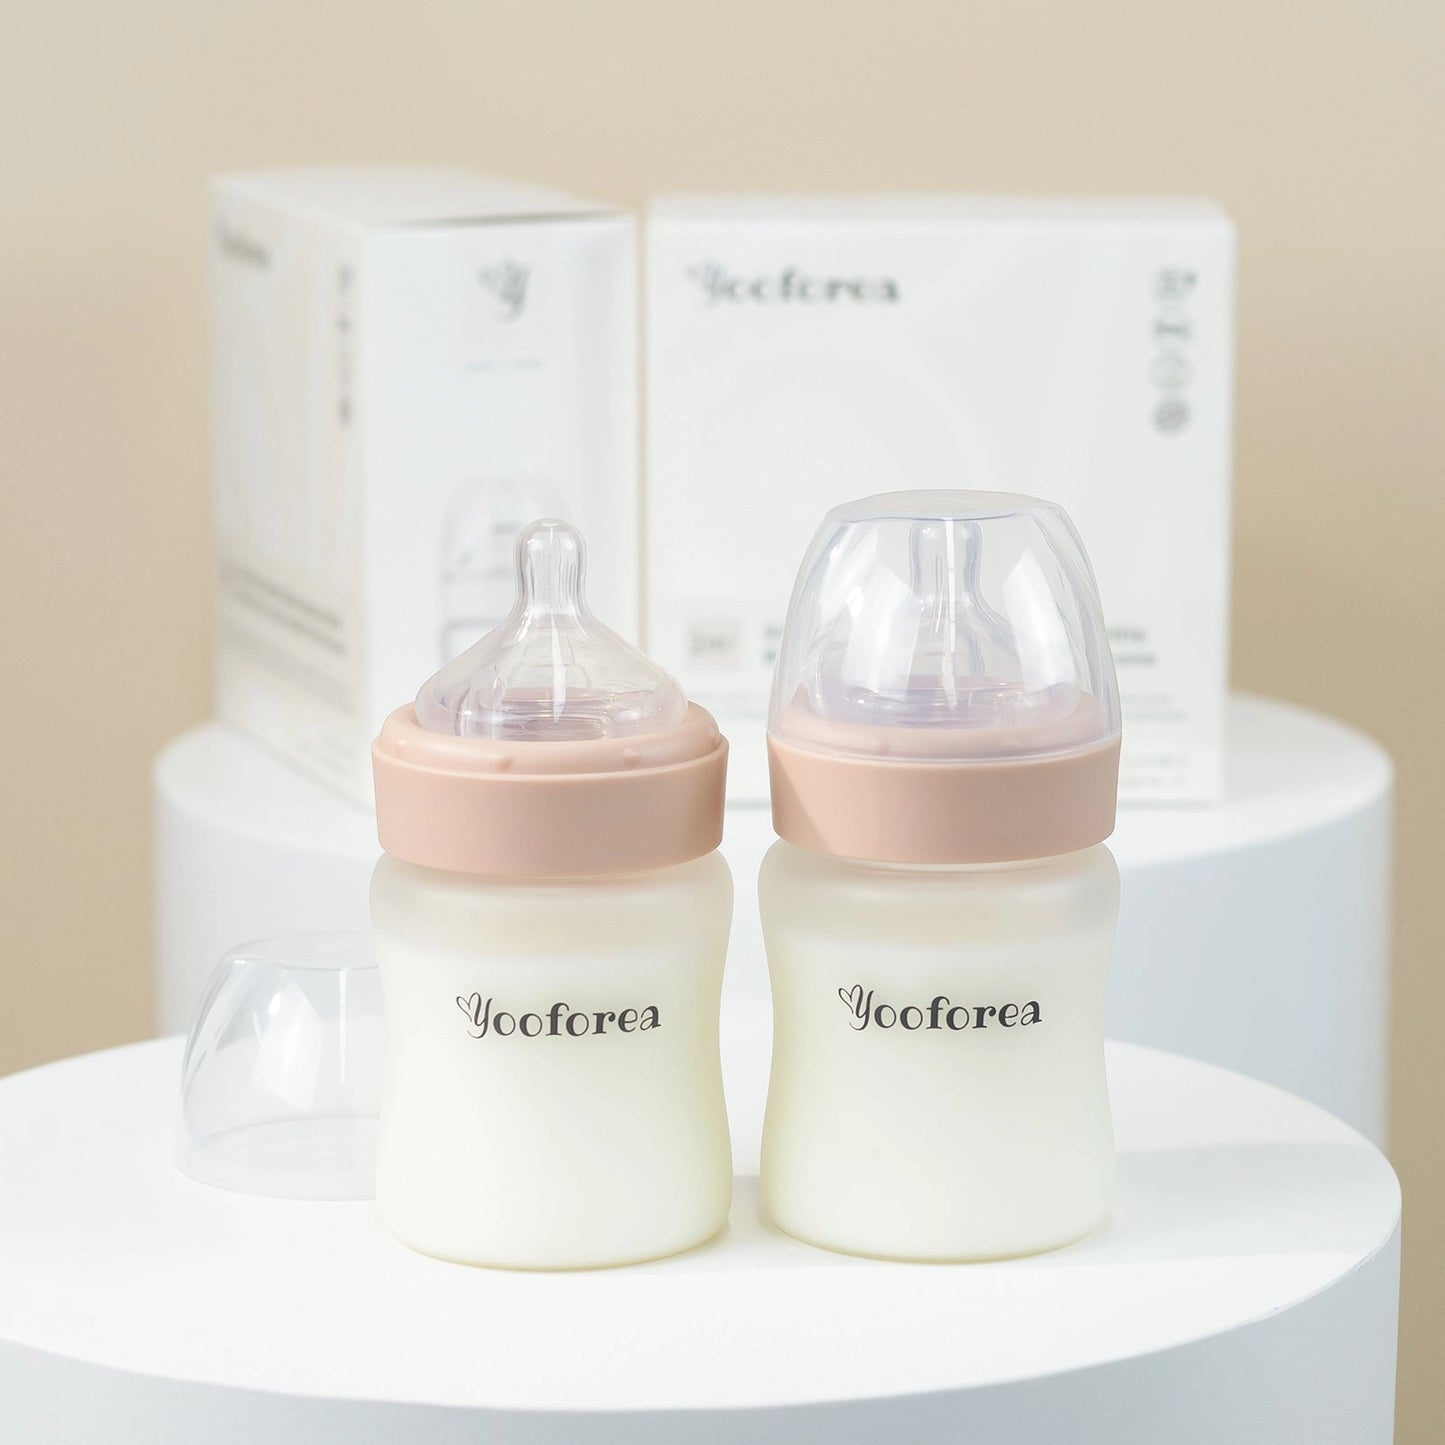 YOOFOREA - Silicone Coated Glass Baby Bottle 2-Pack Nursing